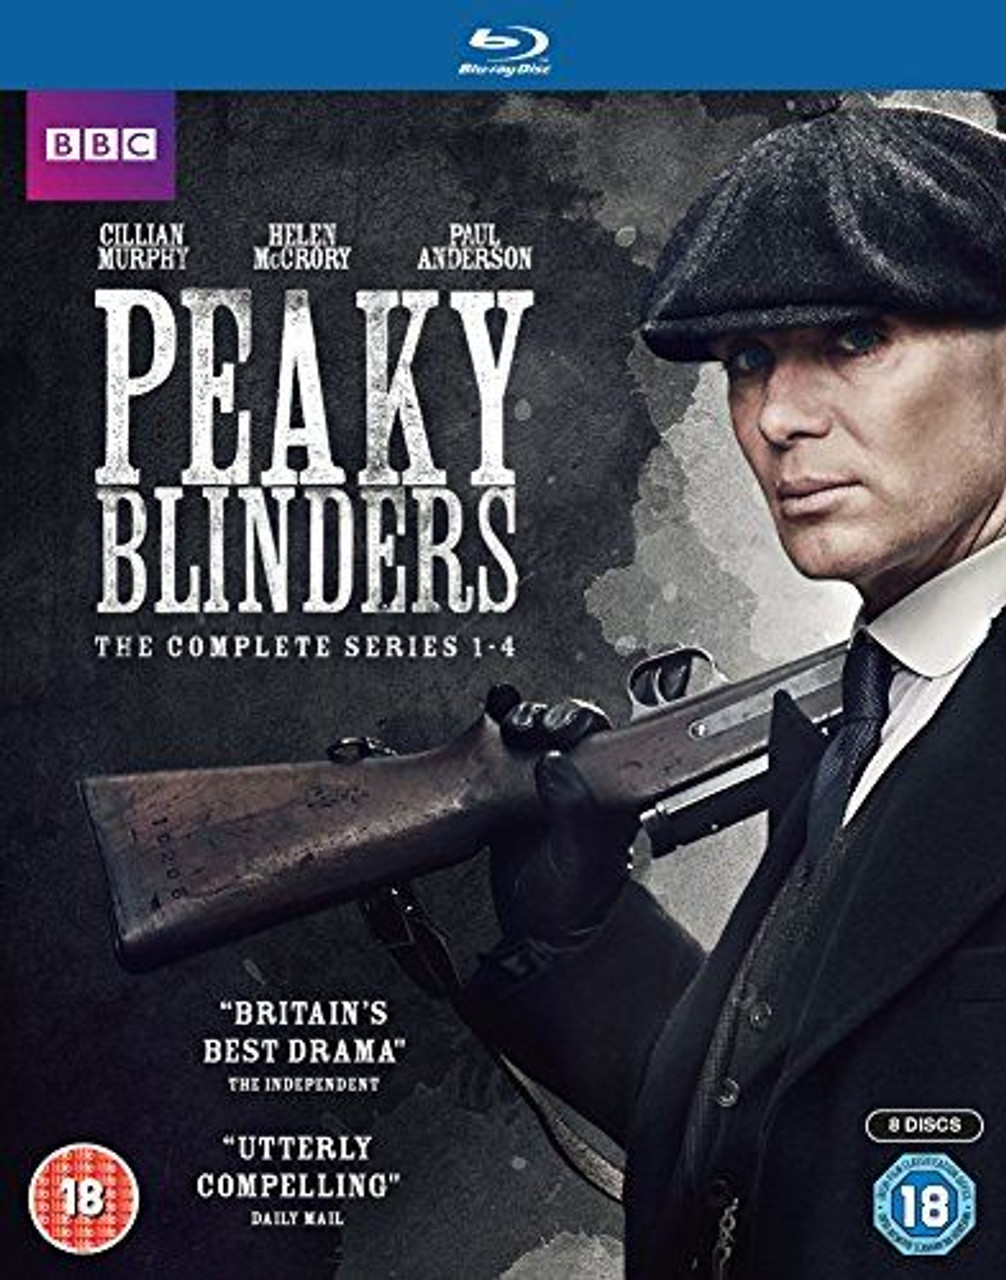 Peaky Blinders Series 1-4 Blu-ray